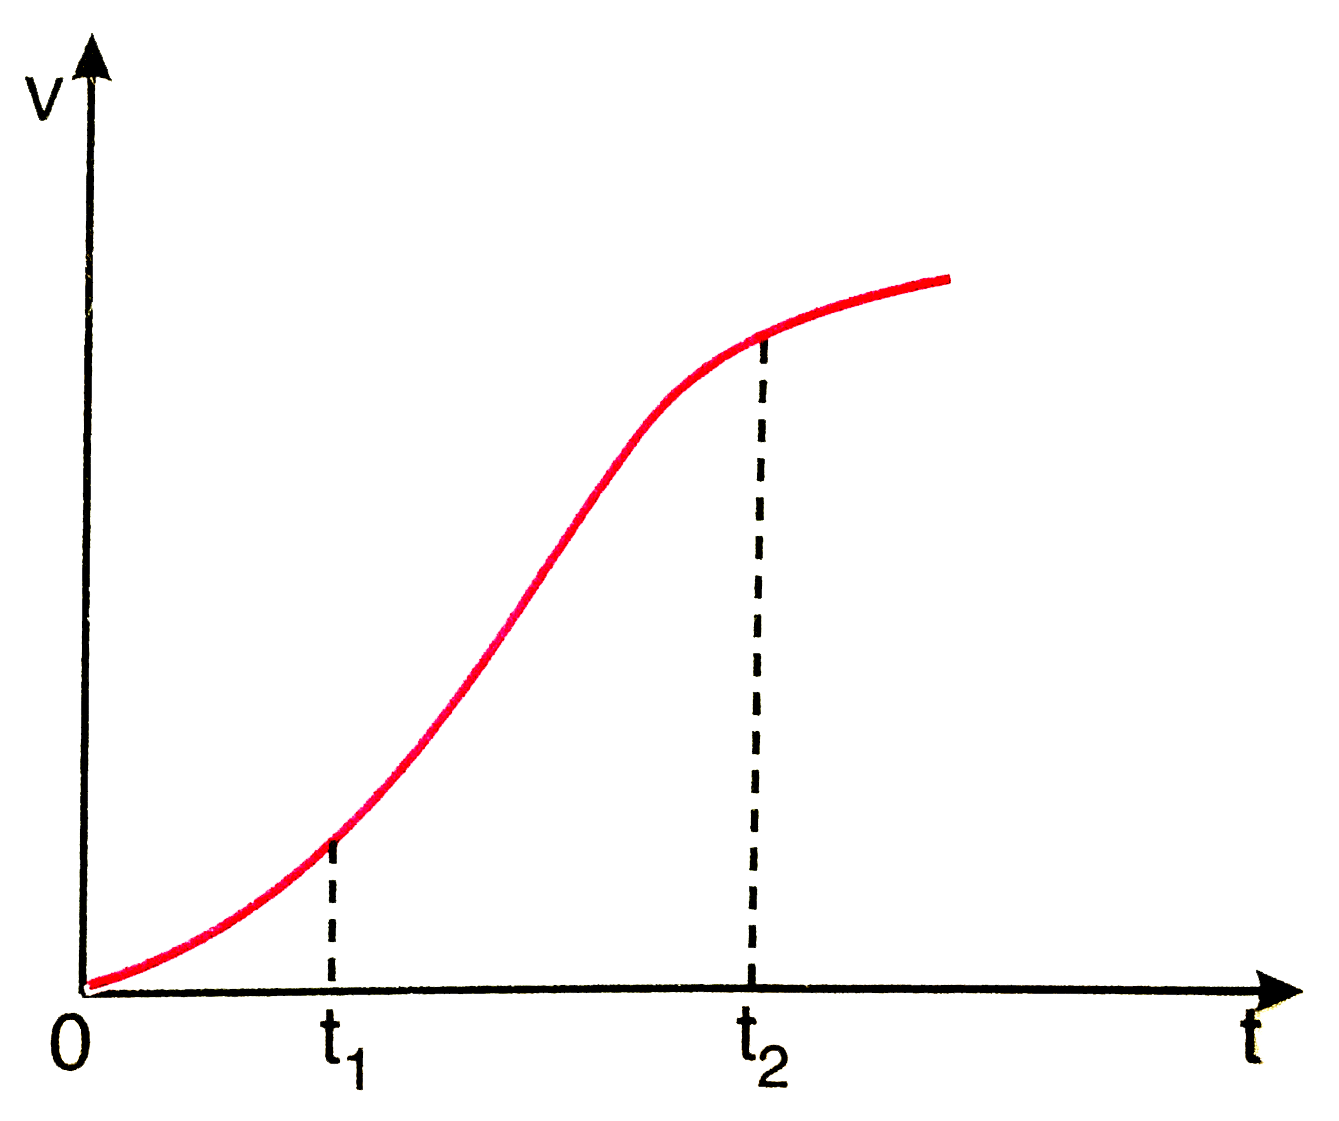 एक विमीय गति में किसी का वेग - समय ग्राफ चित्र 3.62 में दिखाया गया है नीचे दिए सूत्रों में t(1) से t(2) तक के समय अंतराल की अवधि में कण की गति का वर्णन करने के लिए कौन-से सूत्र सही है   x(t(2))-x(t(1))=t - अक्ष तथा दिखाई गई बिन्दुकित रेखा के बीच दर्शाए गए वक्र अंतर्गत आने वाले क्षेत्रफल ।